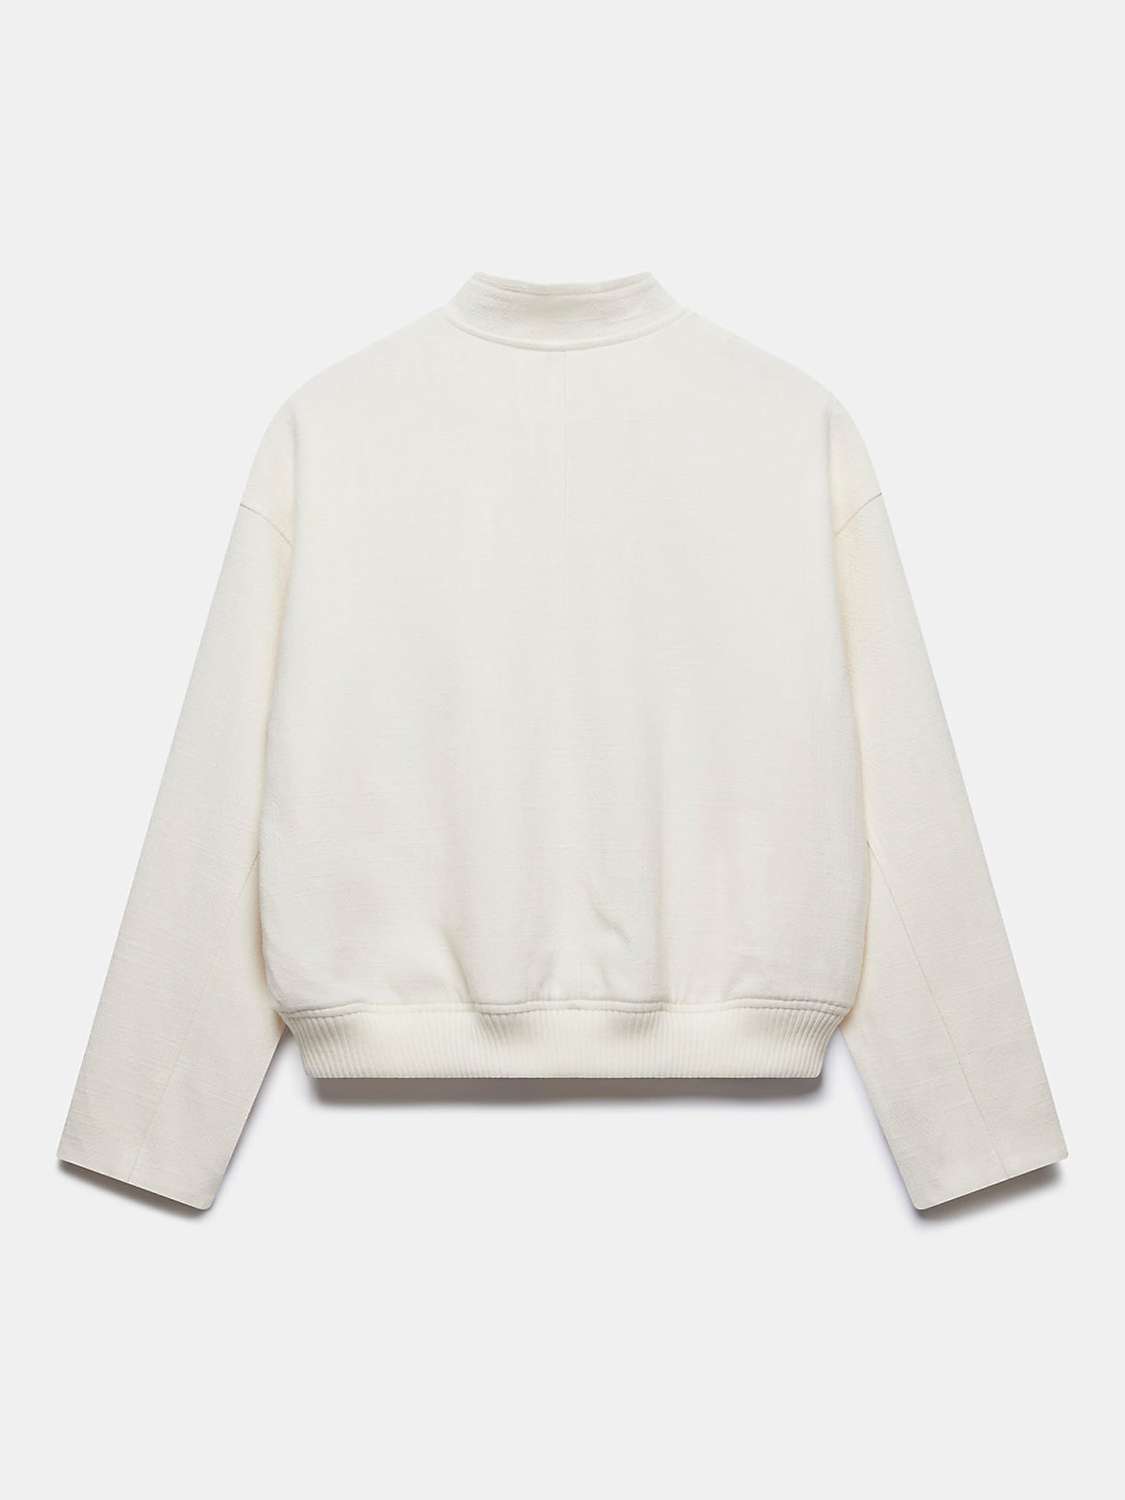 Buy Mint Velvet Textured Bomber Jacket, White Ivory Online at johnlewis.com